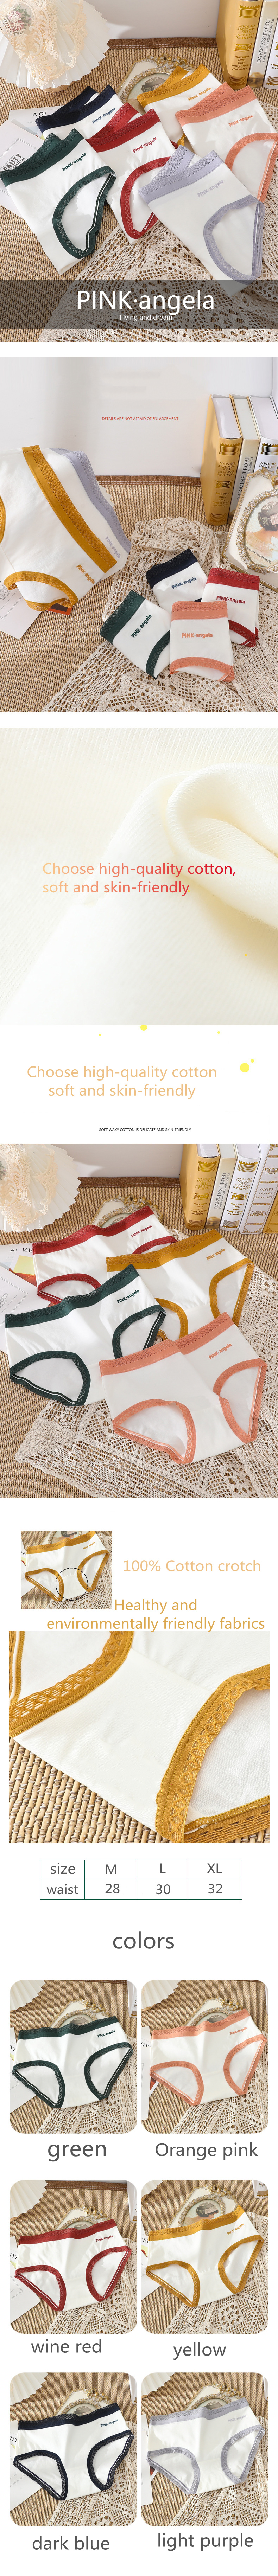 organic cotton underwear women